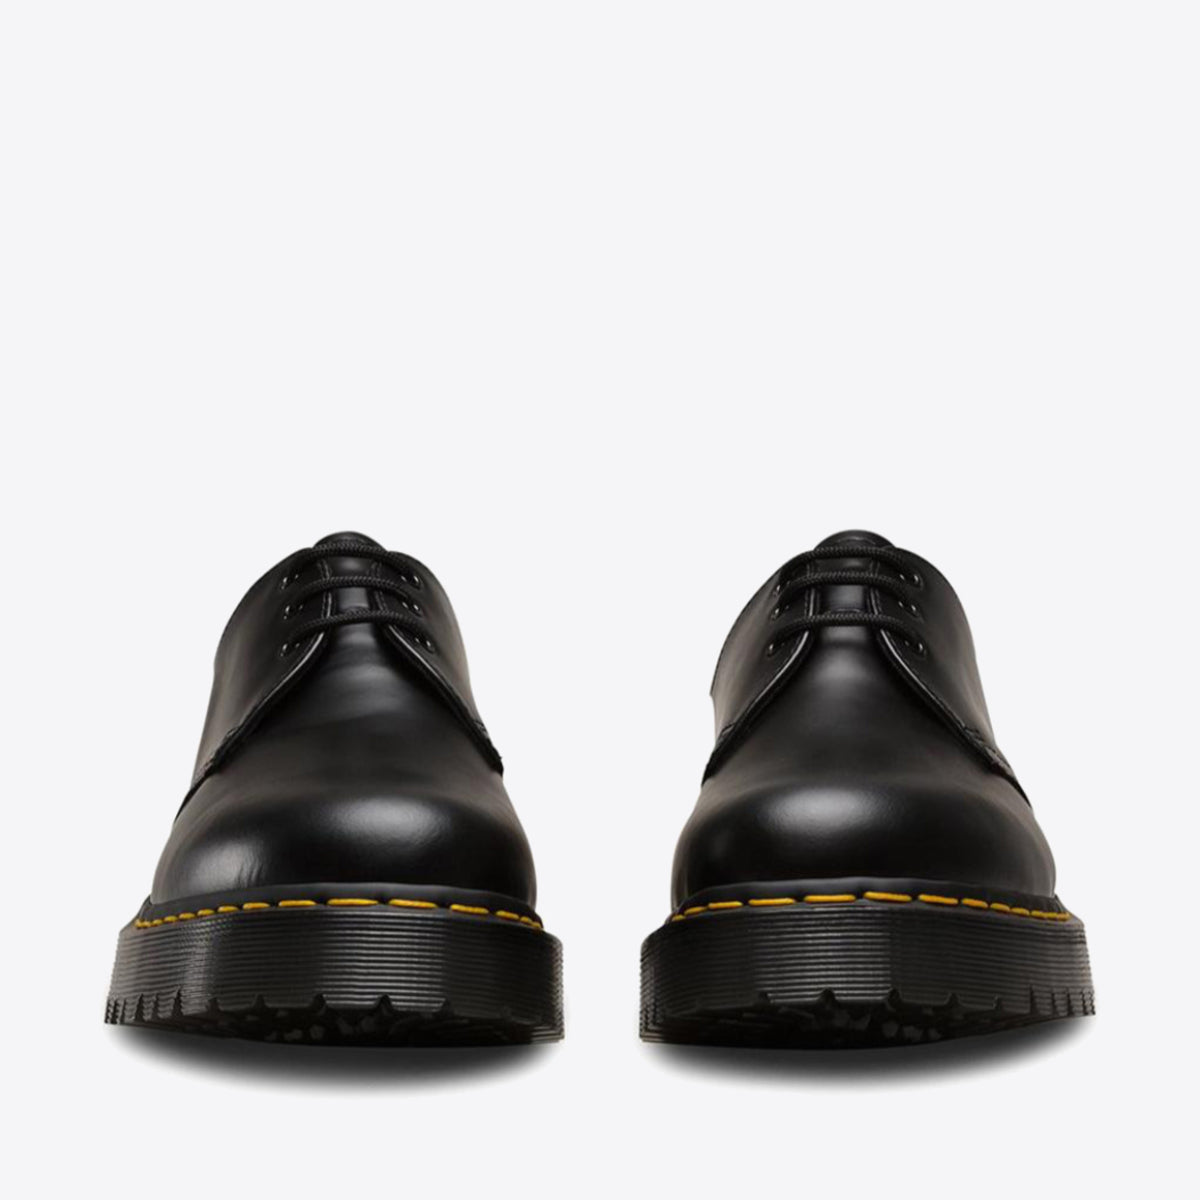 DR MARTENS 1461 Bex 3-Eye Shoes Black - Image 5